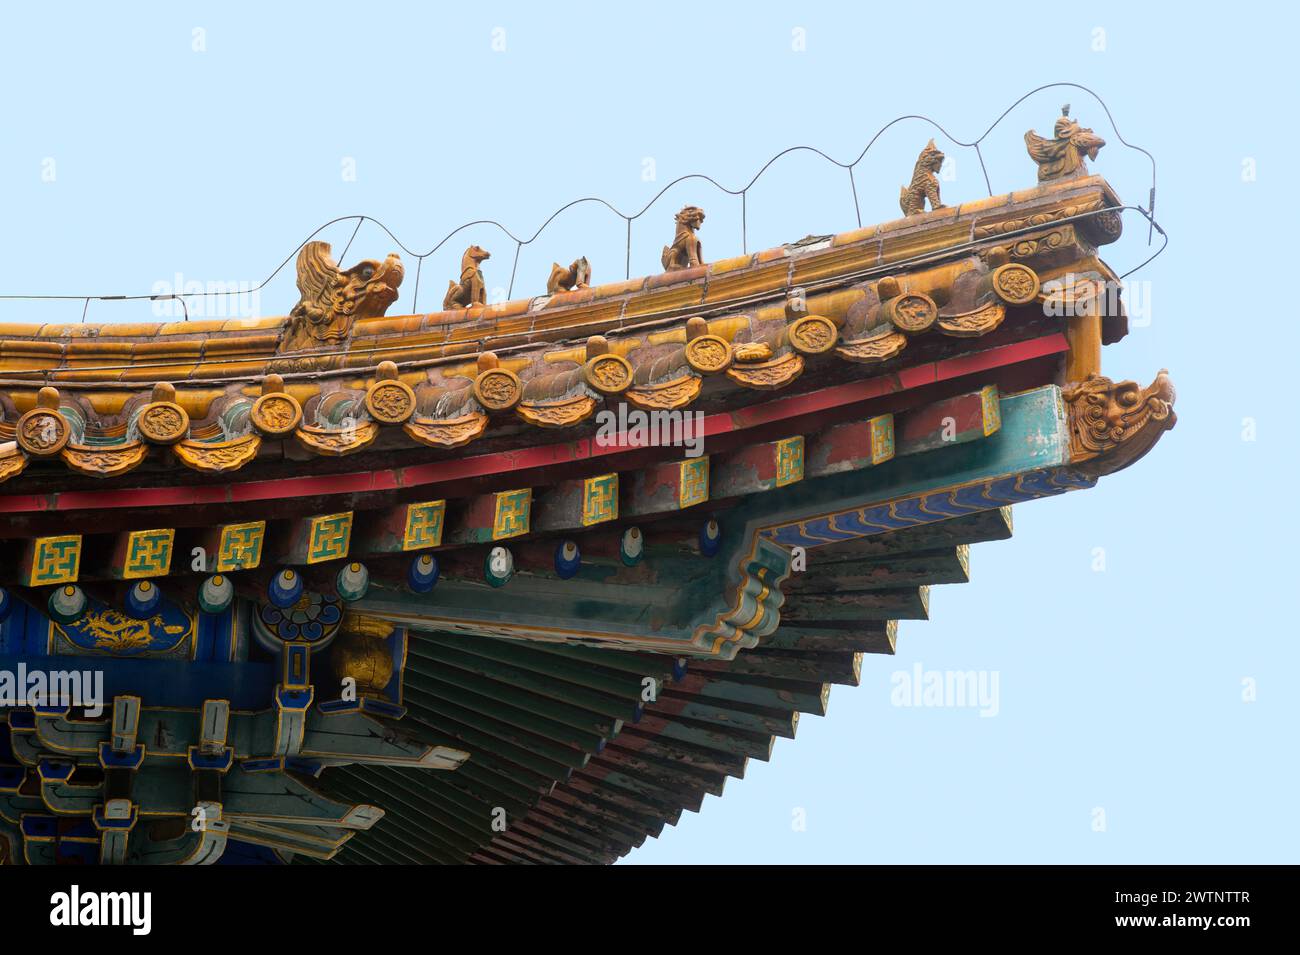 L'architettura cinese dei tetti mostra diversi livelli di importanza per gli edifici. I tetti alla moda erano usati principalmente per i palazzi imperiali. Foto Stock